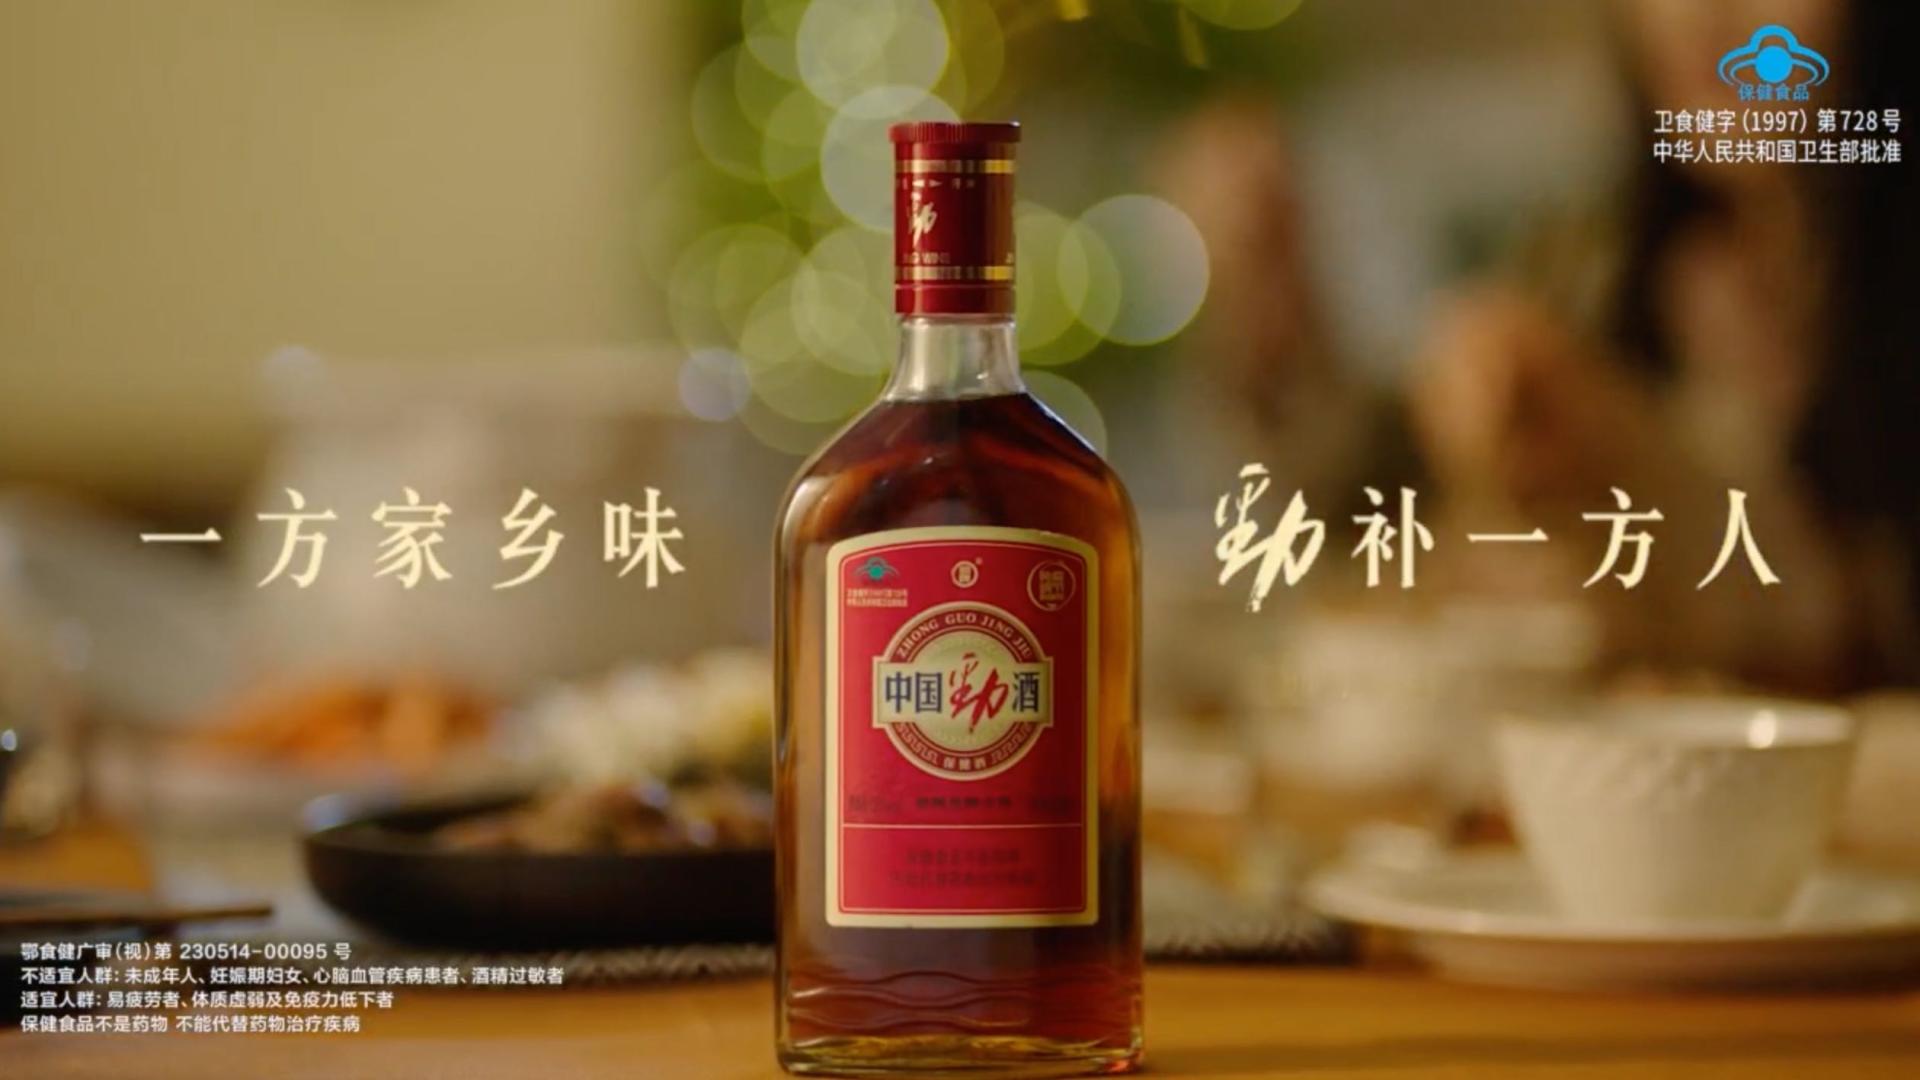 劲酒 主题篇 60sec-广告片餐饮食品视频